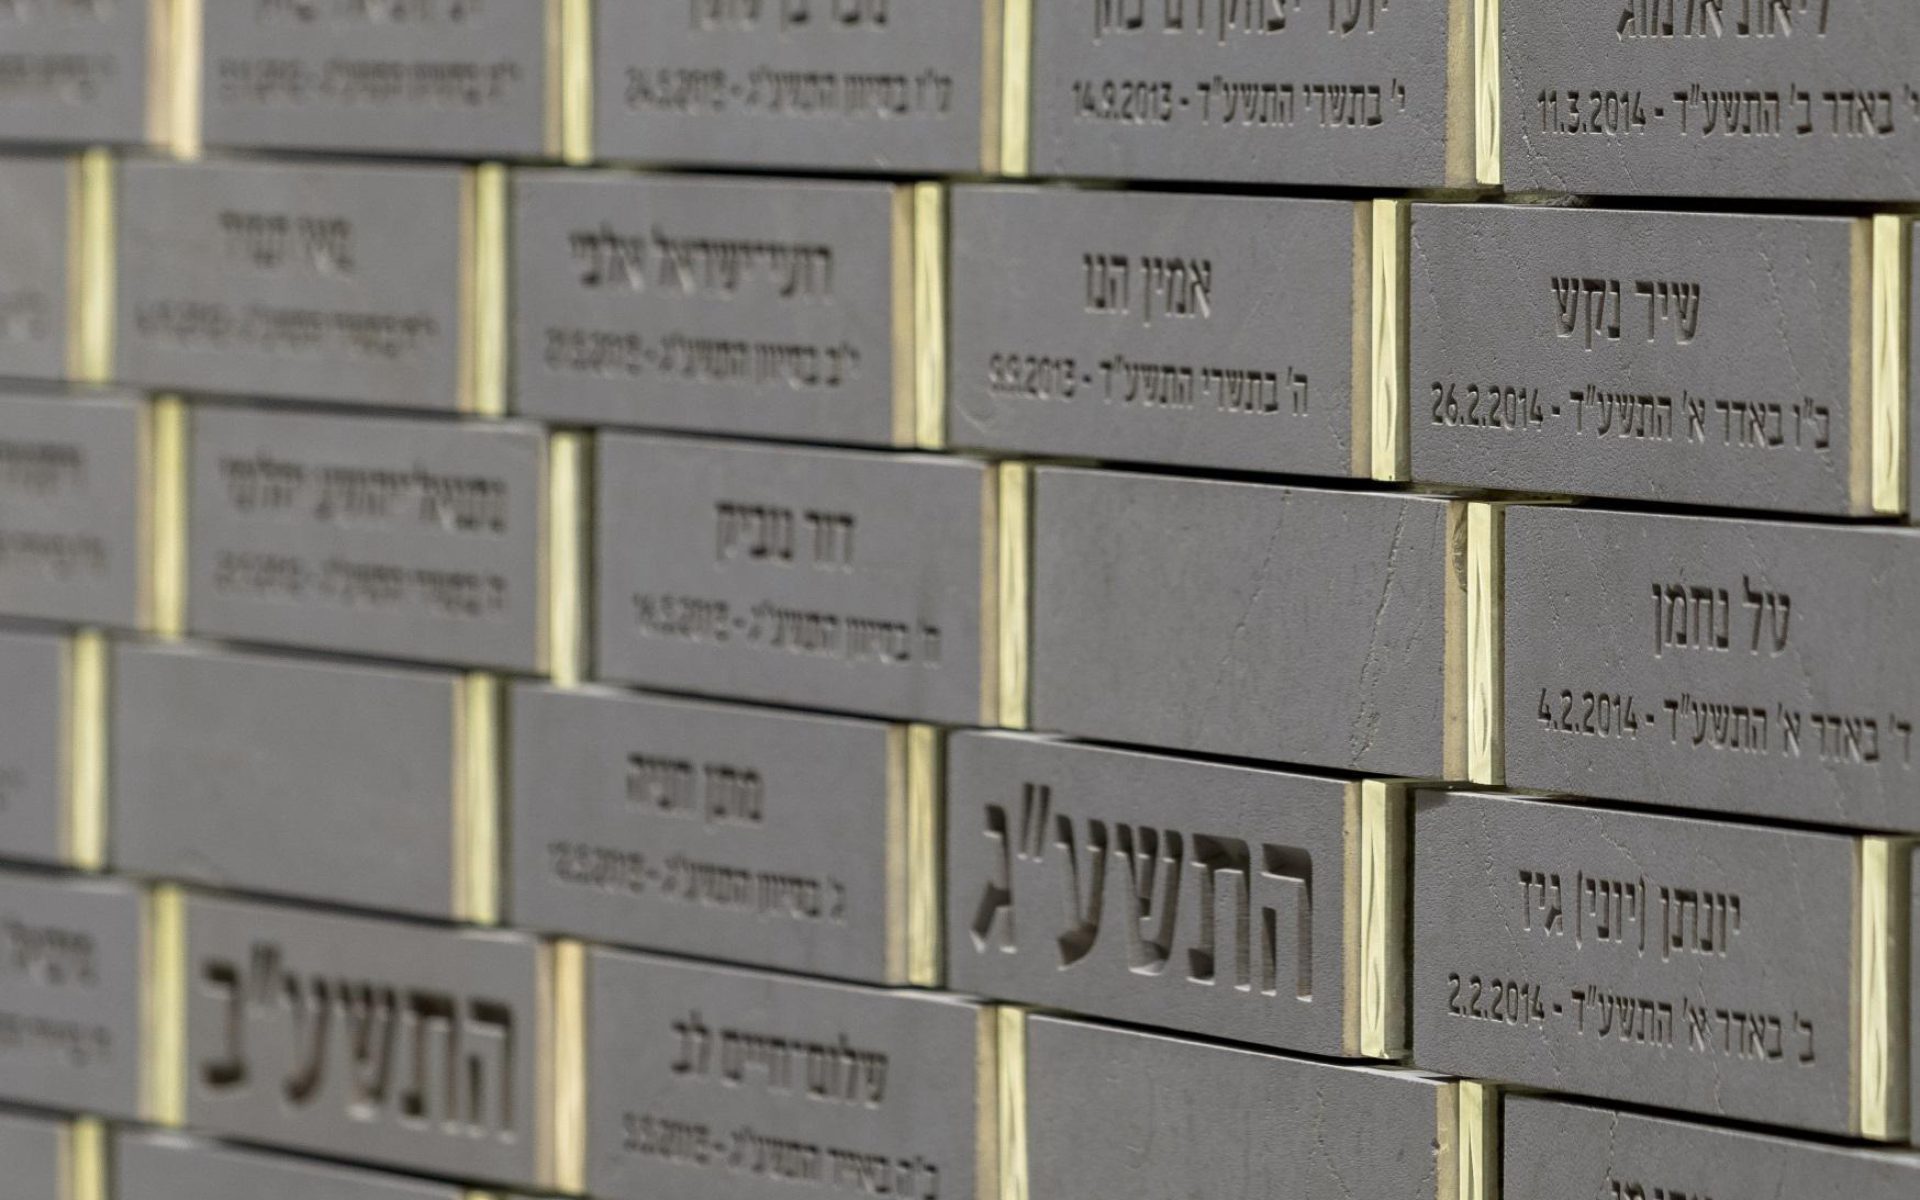 מאות שמות "הצטרפו" מאז אוקטובר לקיר השמות הבלתי נגמר (צילום: עמית גירון)